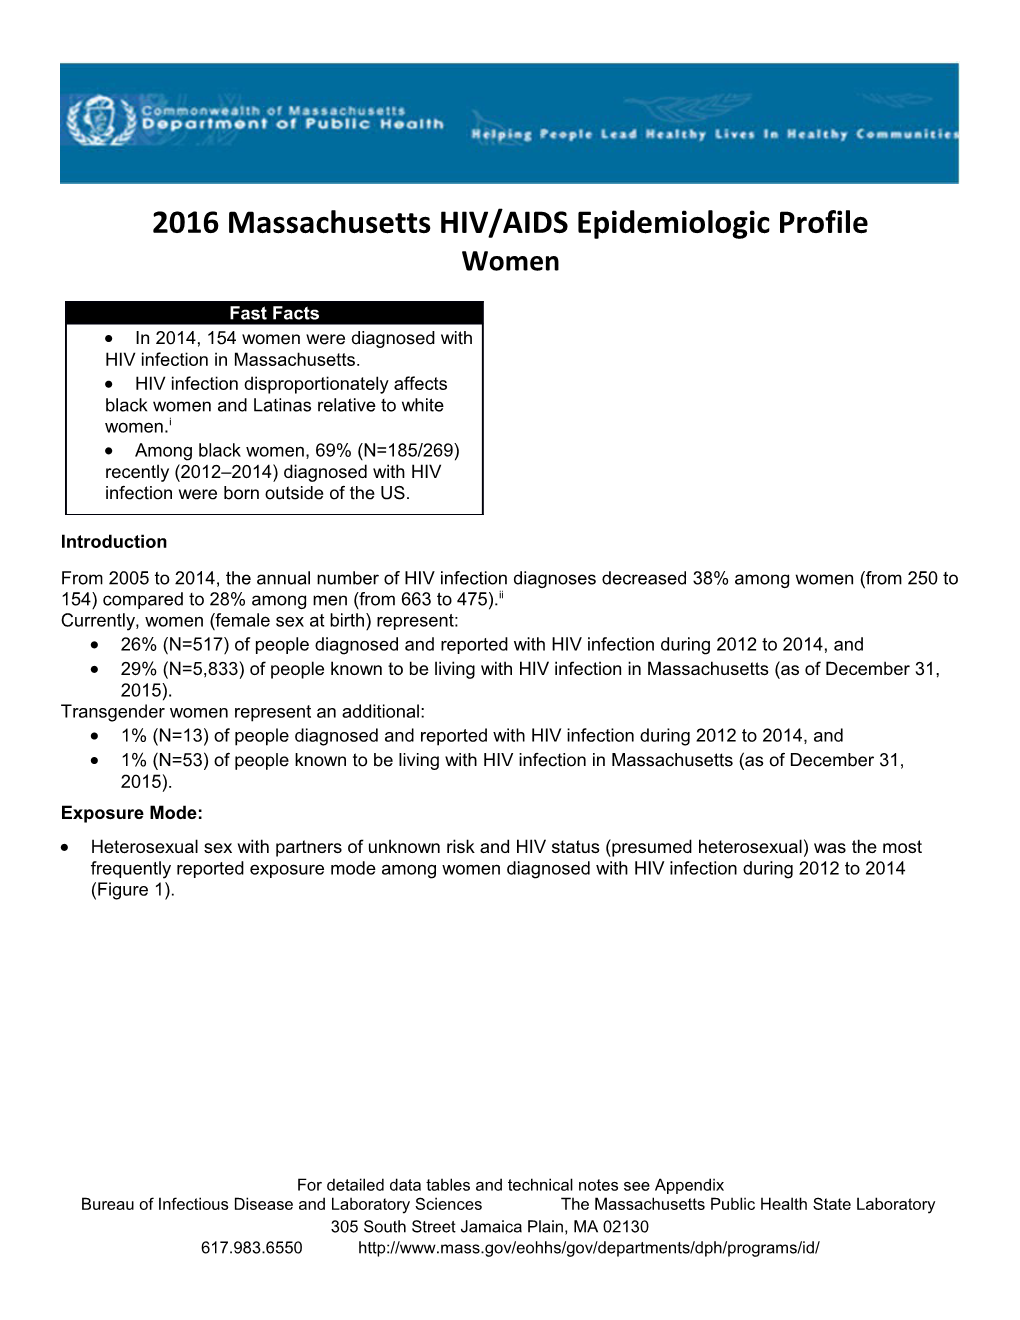 Massachusetts HIV/AIDS Fact Sheet: Women